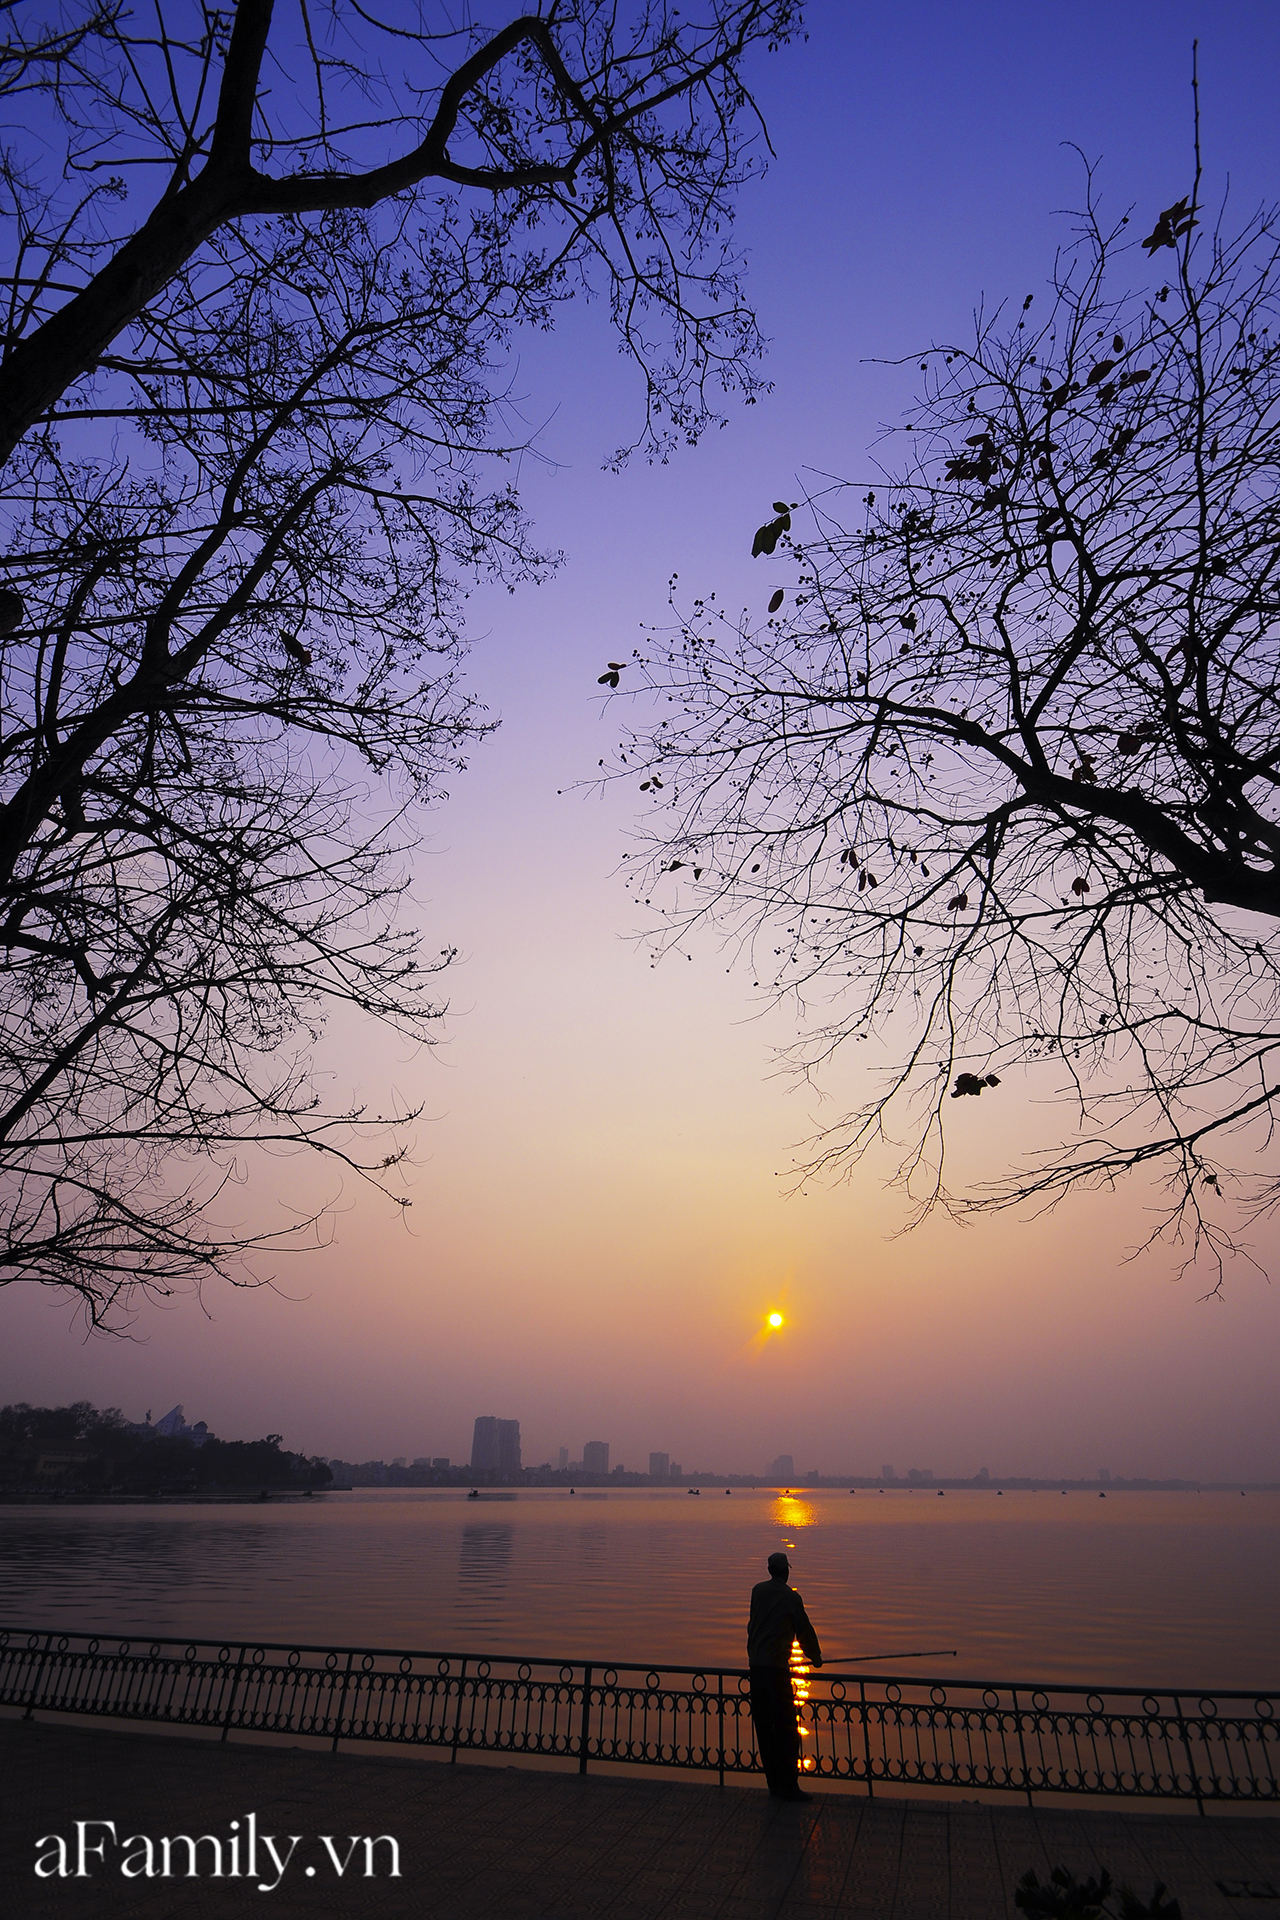 Hồ Tây hoàng hôn: Hãy chiêm ngưỡng một trong những phong cảnh đẹp nhất của Hà Nội - Hồ Tây hoàng hôn. Tận hưởng khoảnh khắc thanh tịnh khi mặt trời dần lặn xuống và bầu trời chuyển sang màu cam đỏ rực rỡ, mang lại cho bạn những cảm xúc thăng hoa.